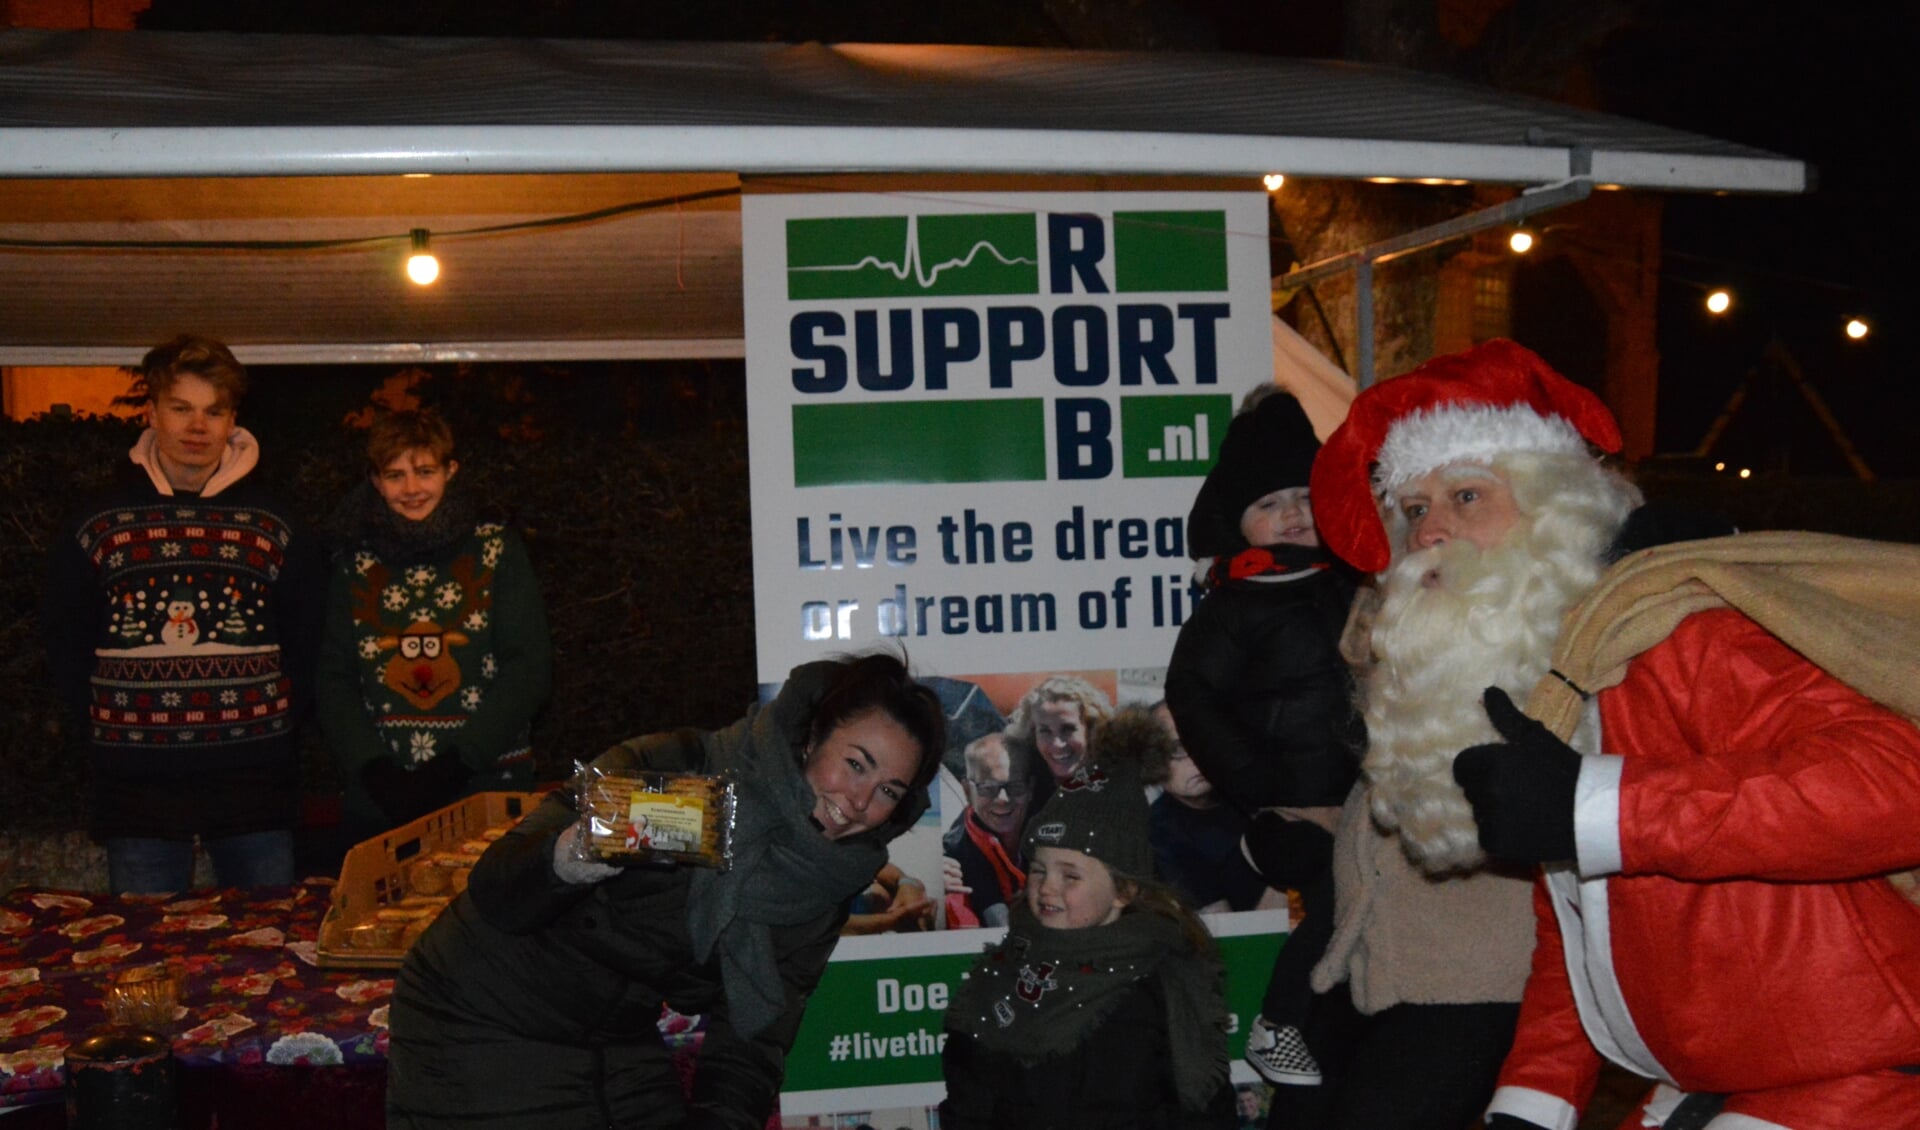 OSG-scholieren Ben Daalder en Jarno Leijstra verkochten op de kerstmarkt in Oosterend zaterdag koek voor Rob. De kerstman hielp een handje. 